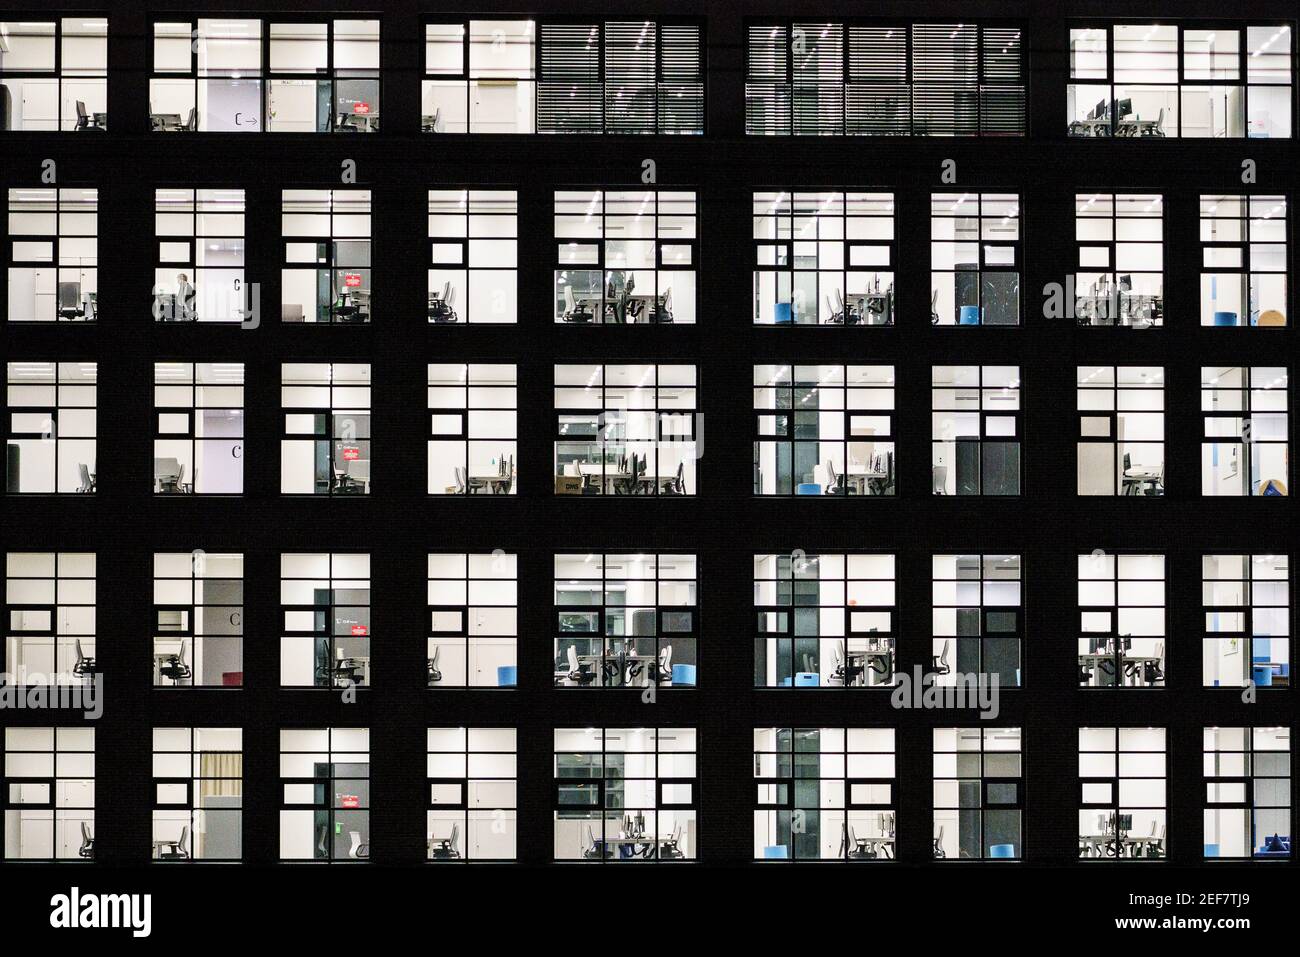 12 febbraio 2021, Hessen, Francoforte sul meno: Gli uffici di un edificio dell'Europaviertel sono illuminati con luce intensa. Foto: Andreas Arnold/dpa Foto Stock